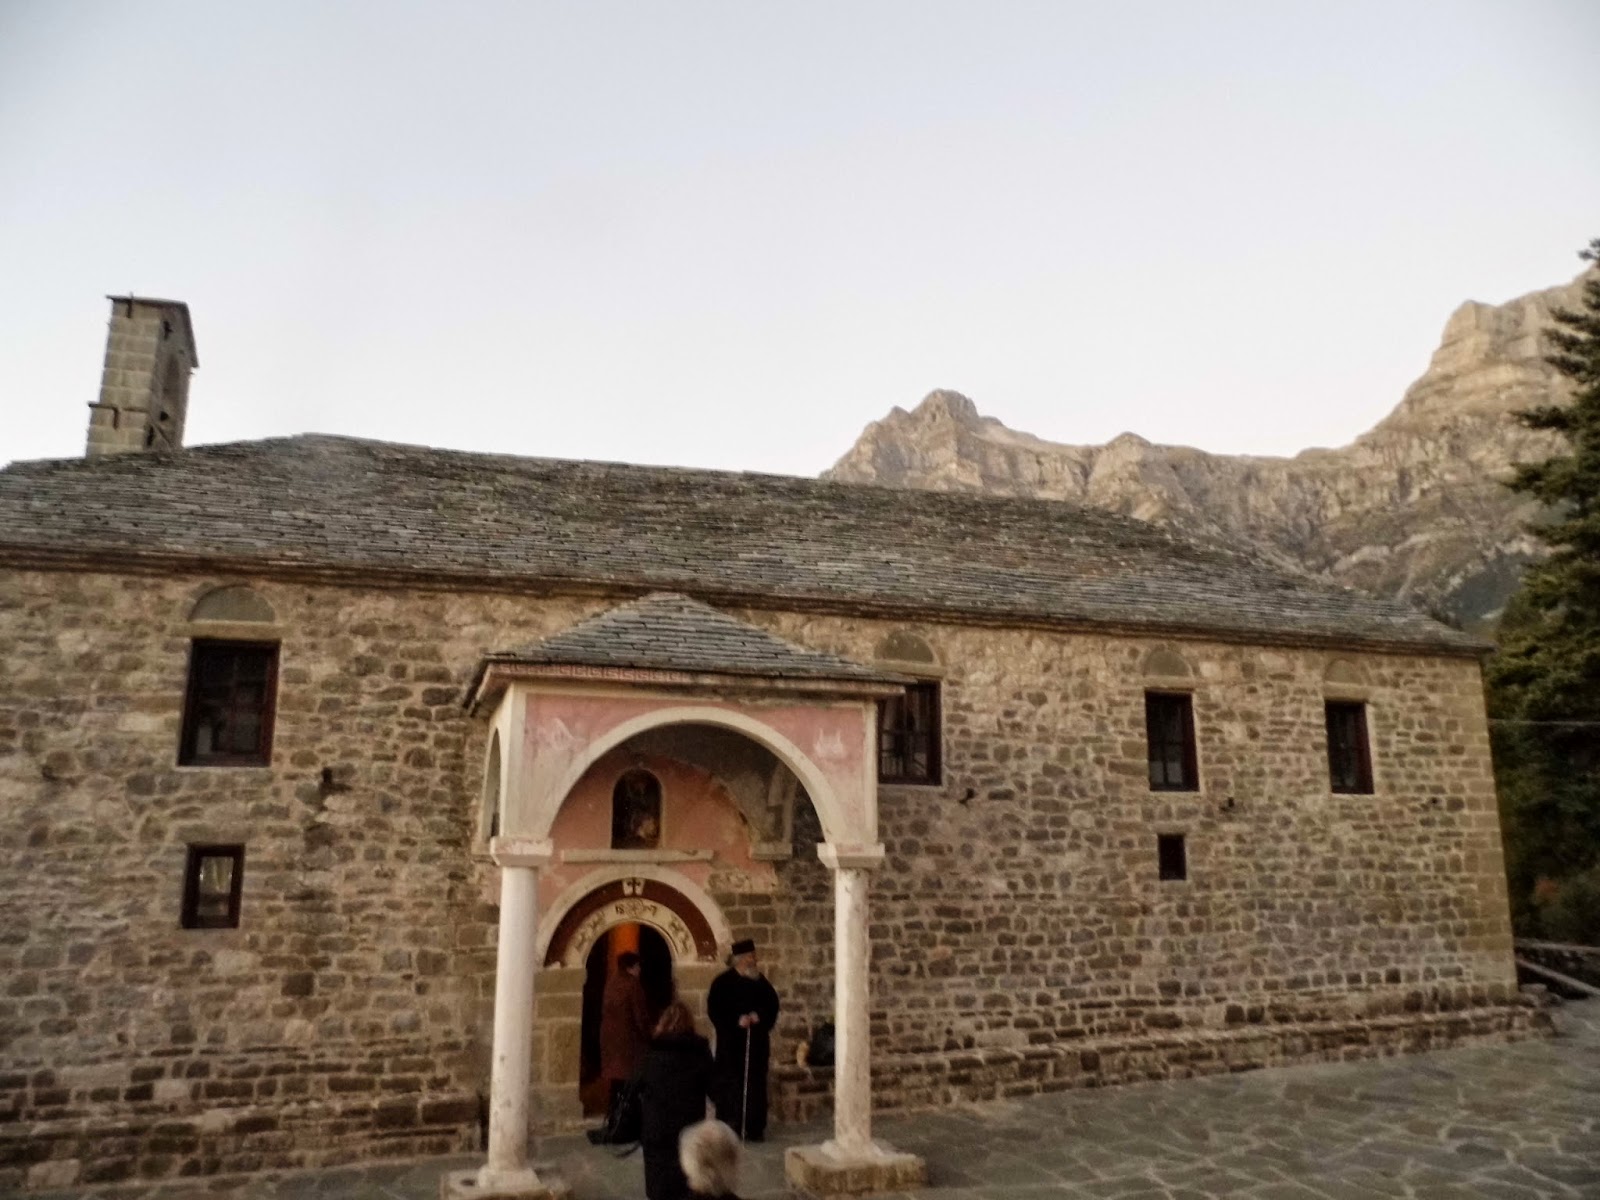 Το ιστορικό μοναστήρι της Αγίας Αικατερίνης στους Καταρράκτες Τζουμέρκων Άρτας [photos + video] - Φωτογραφία 9